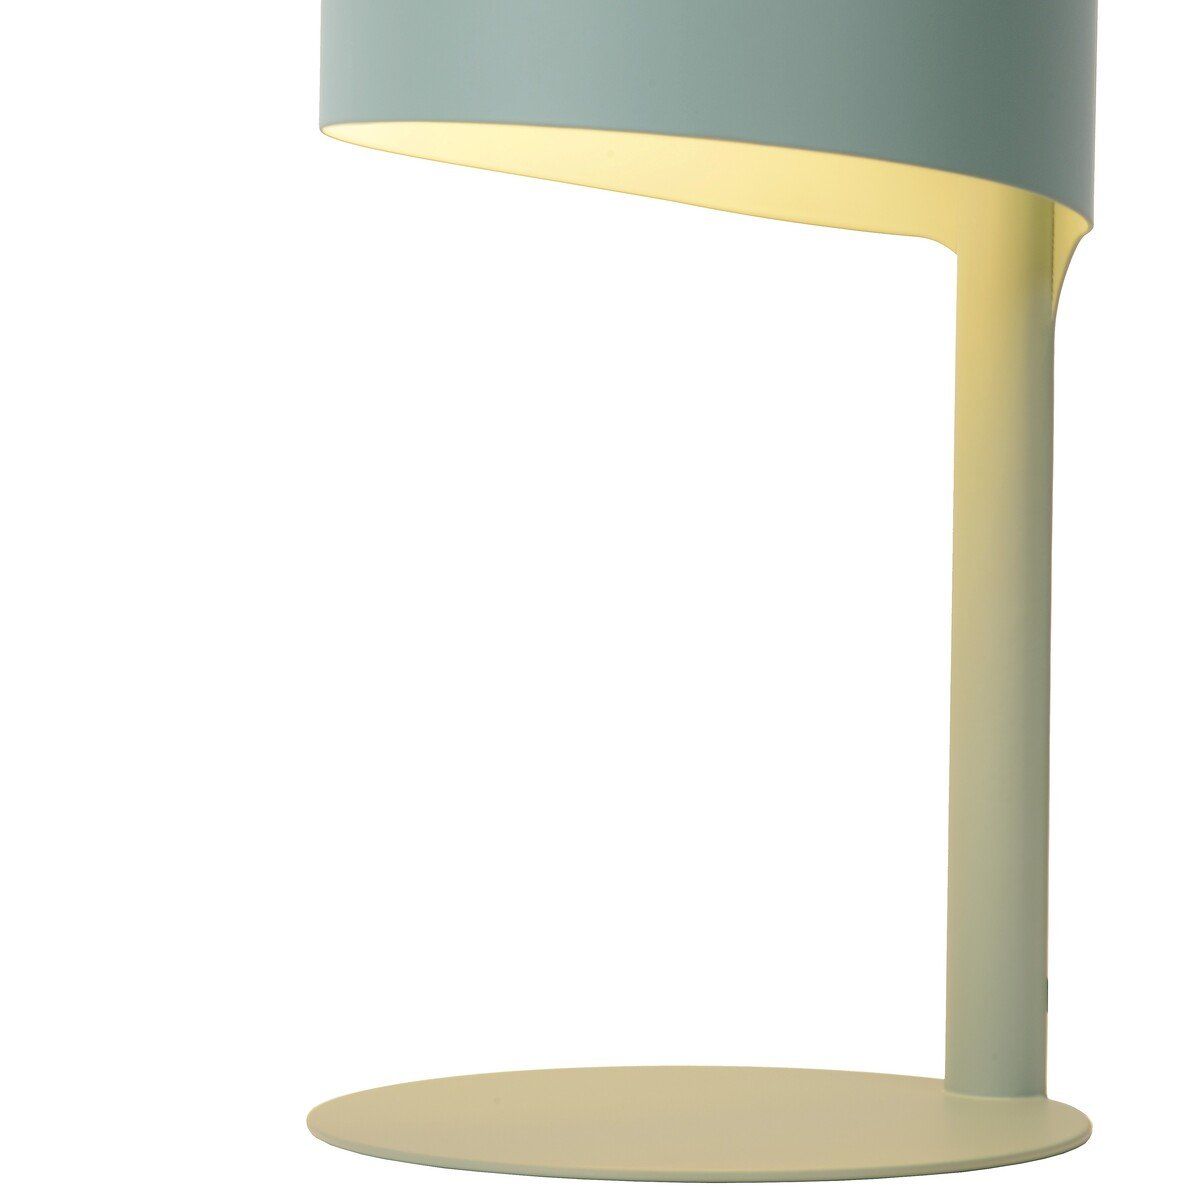 Lampe design KNULLE bleue en métal